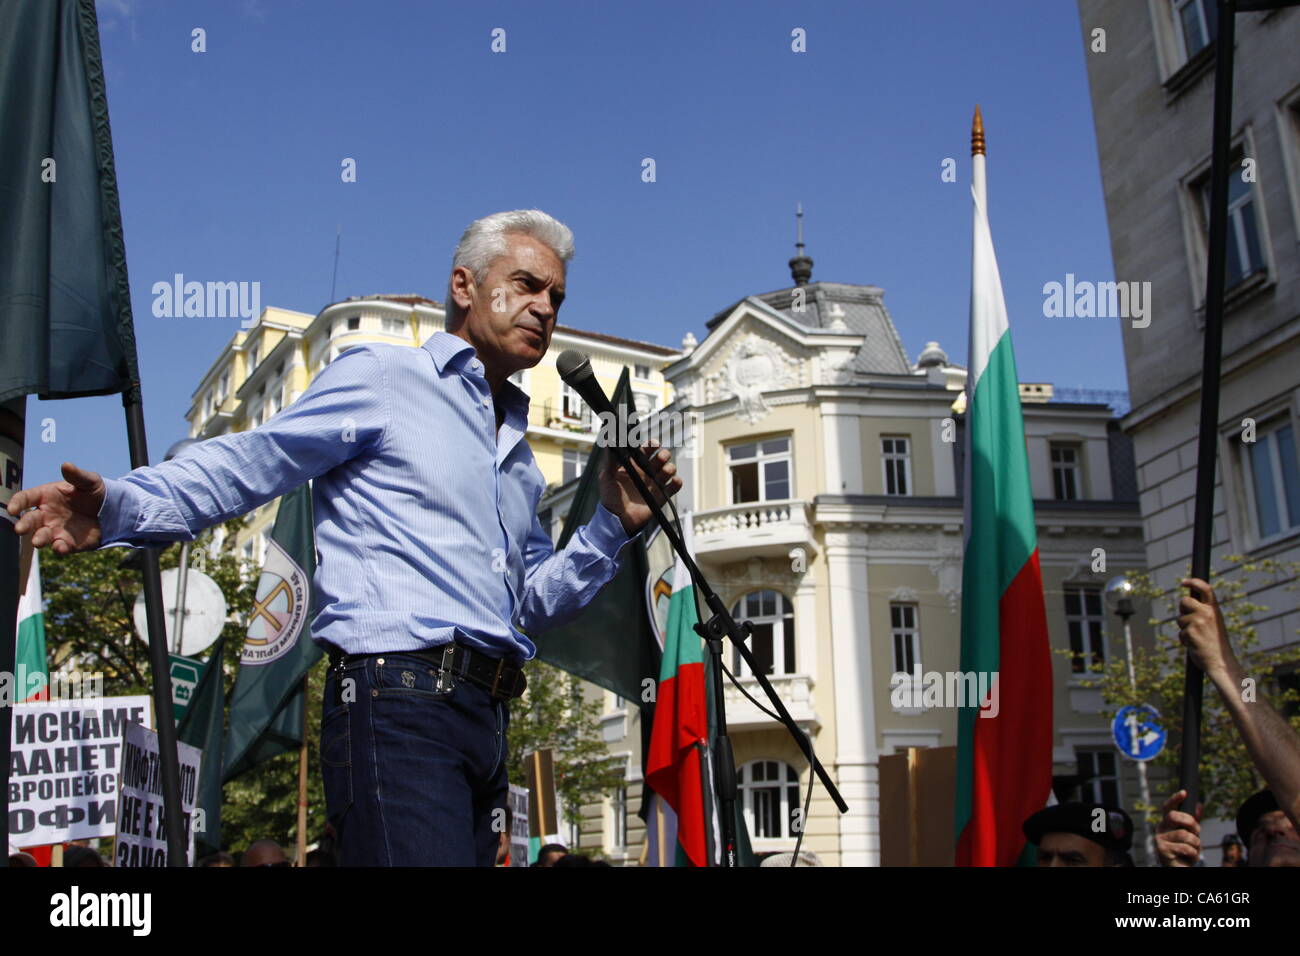 Le chef du parti ultra-nationaliste Ataka (Attaque) lors de son discours devant la municipalité de Sofia, exigeant la fin de l'intolérable "bruit" venant de la mosquée Banya Bashi lors d'appels à la prière, en particulier le vendredi. Sofia, Bulgarie, 14/06/2012 Banque D'Images